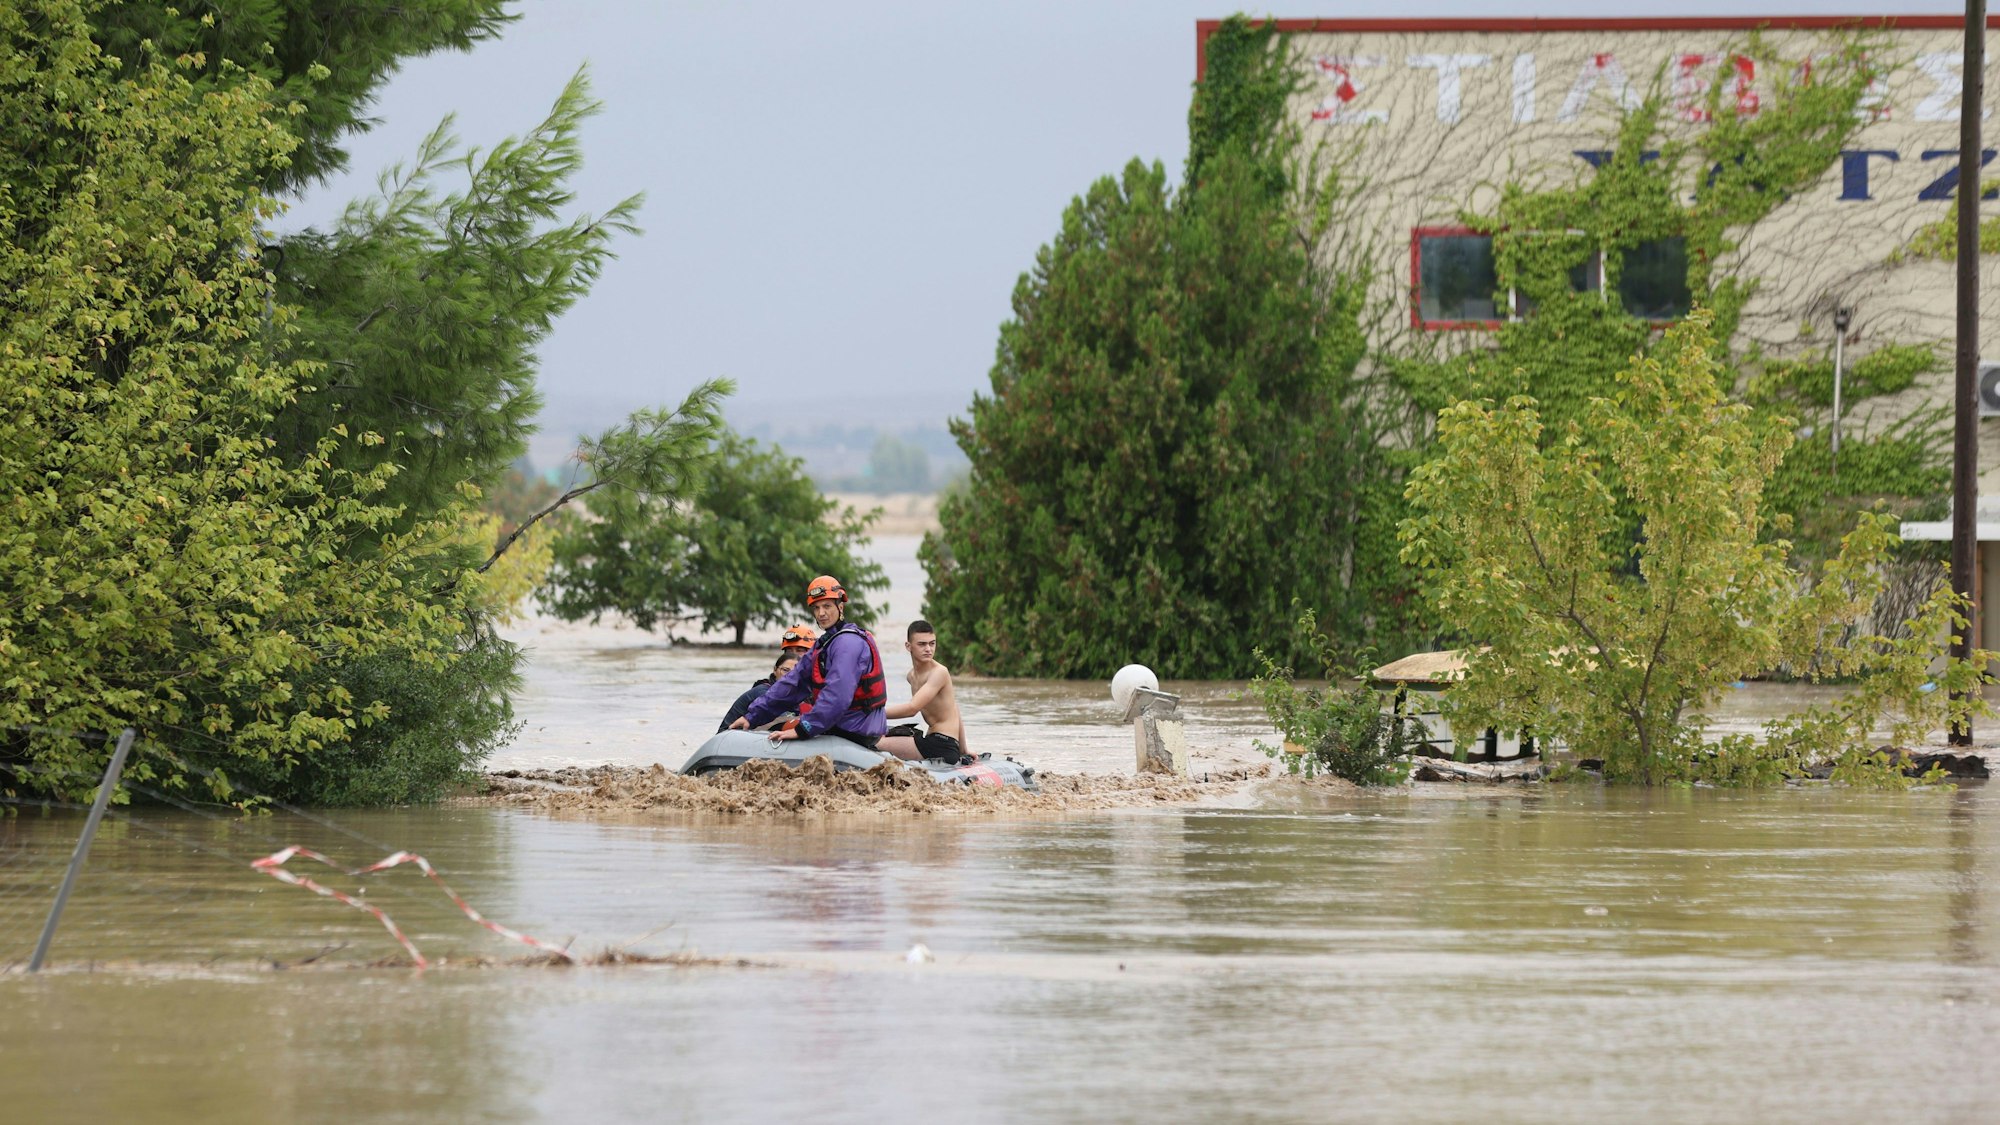 Gemeinde Larissa in Griechenland: Feuerwehrleute mit einem Schlauchboot evakuieren Menschen aus einem überfluteten Gebiet.